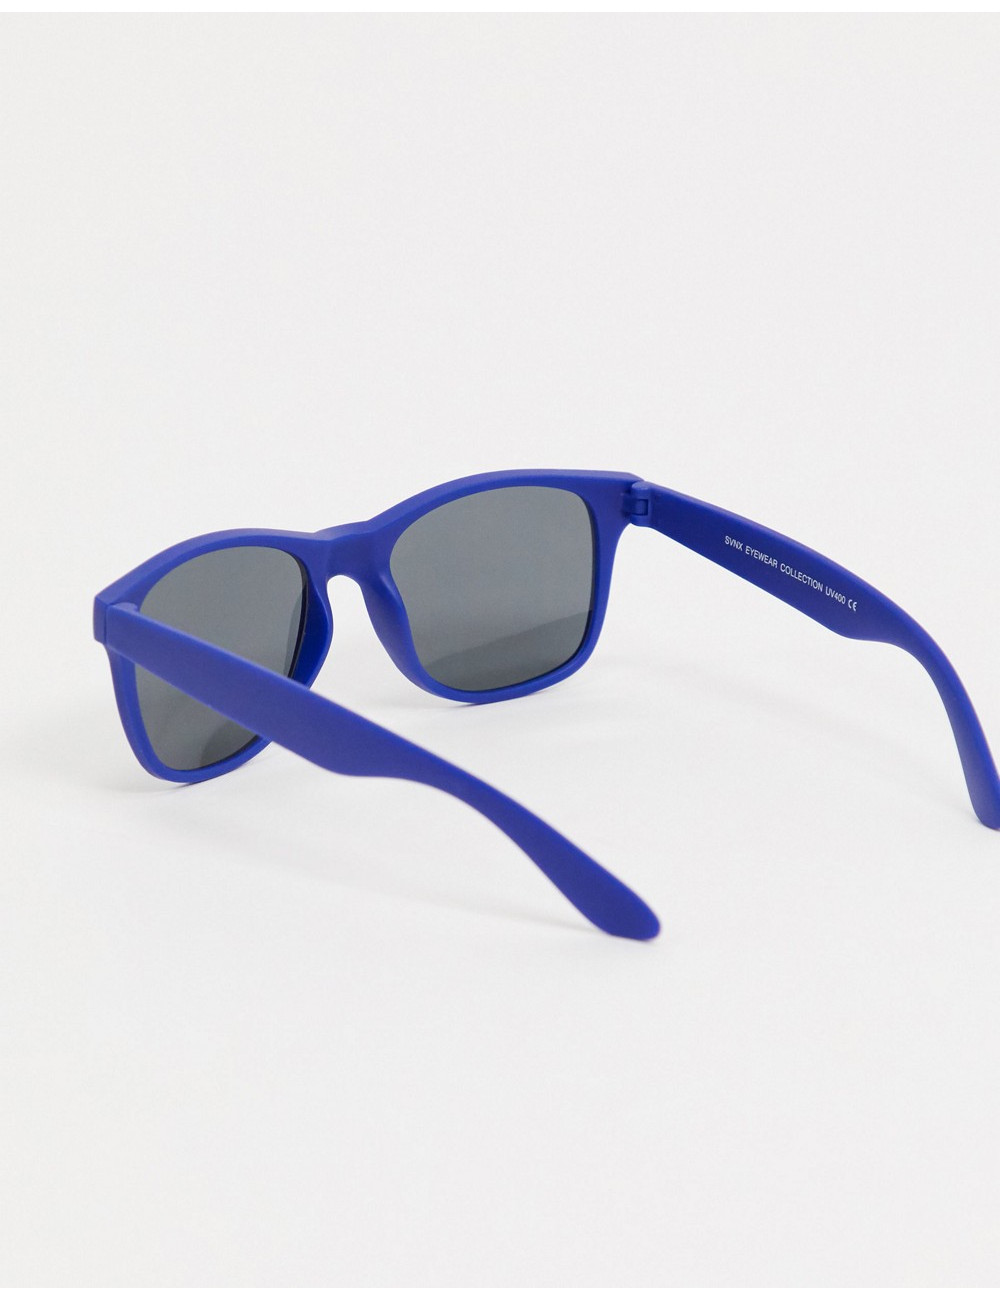 SVNX square sunglasses in...